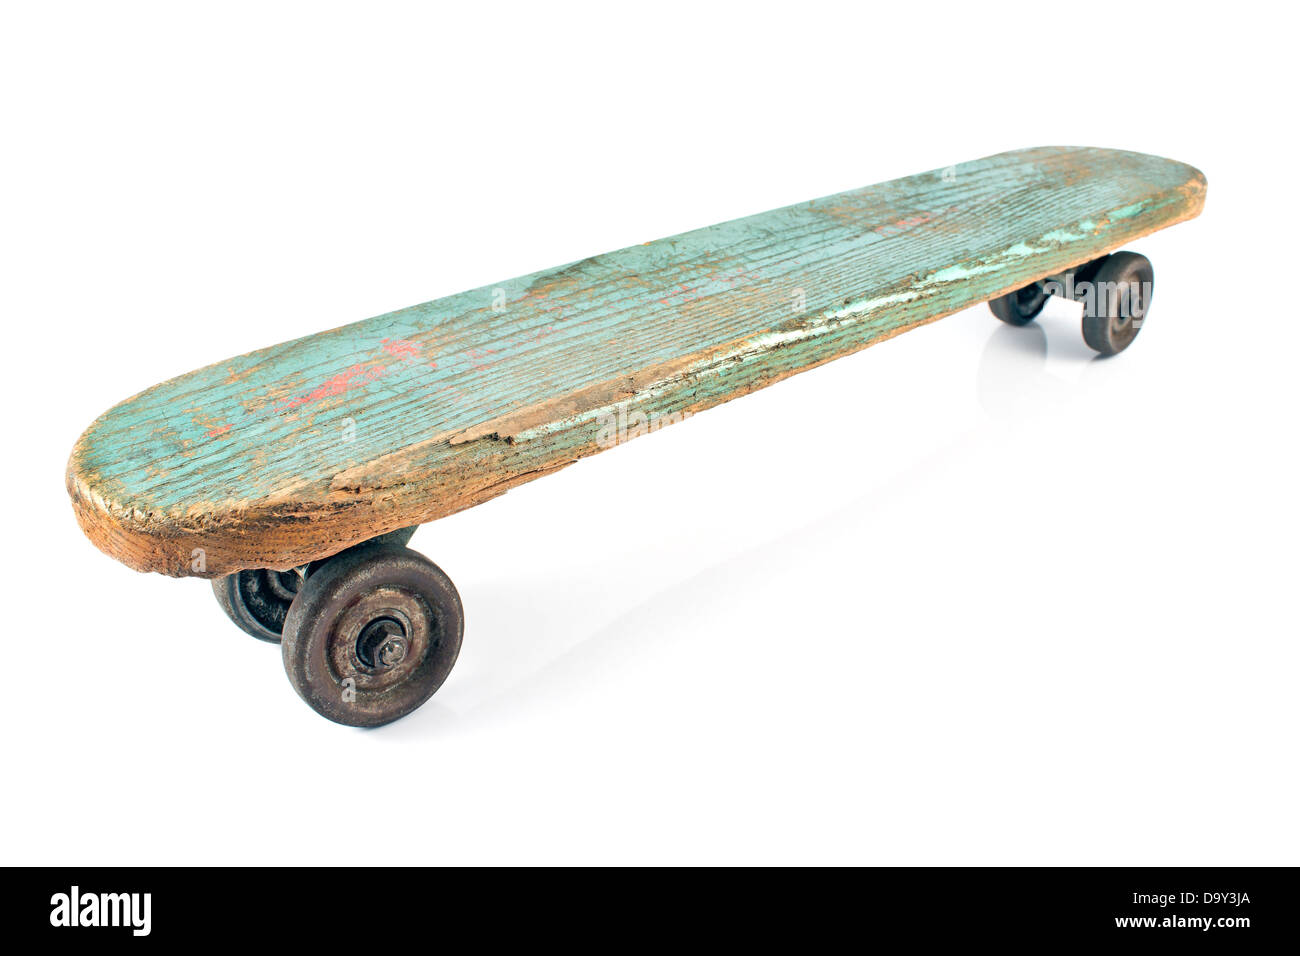 Alte hölzerne Skateboard isoliert auf weiss Stockfotografie - Alamy